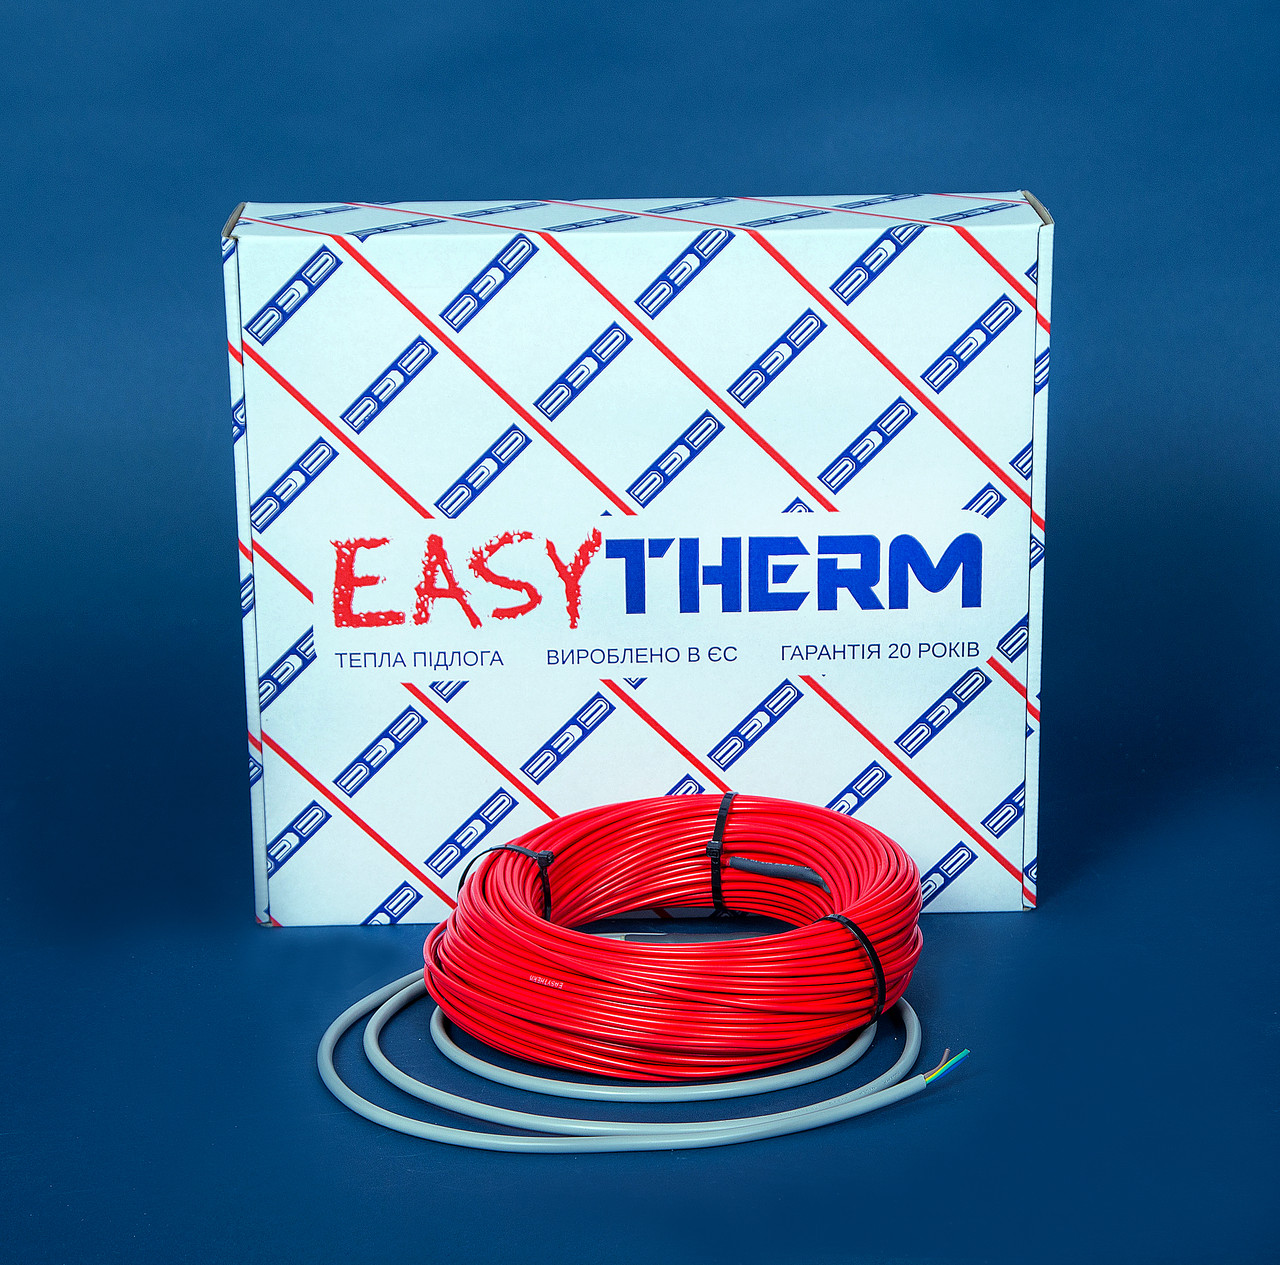 Электрический теплый пол EasyTherm Easycable 32.0 отзывы - изображения 5